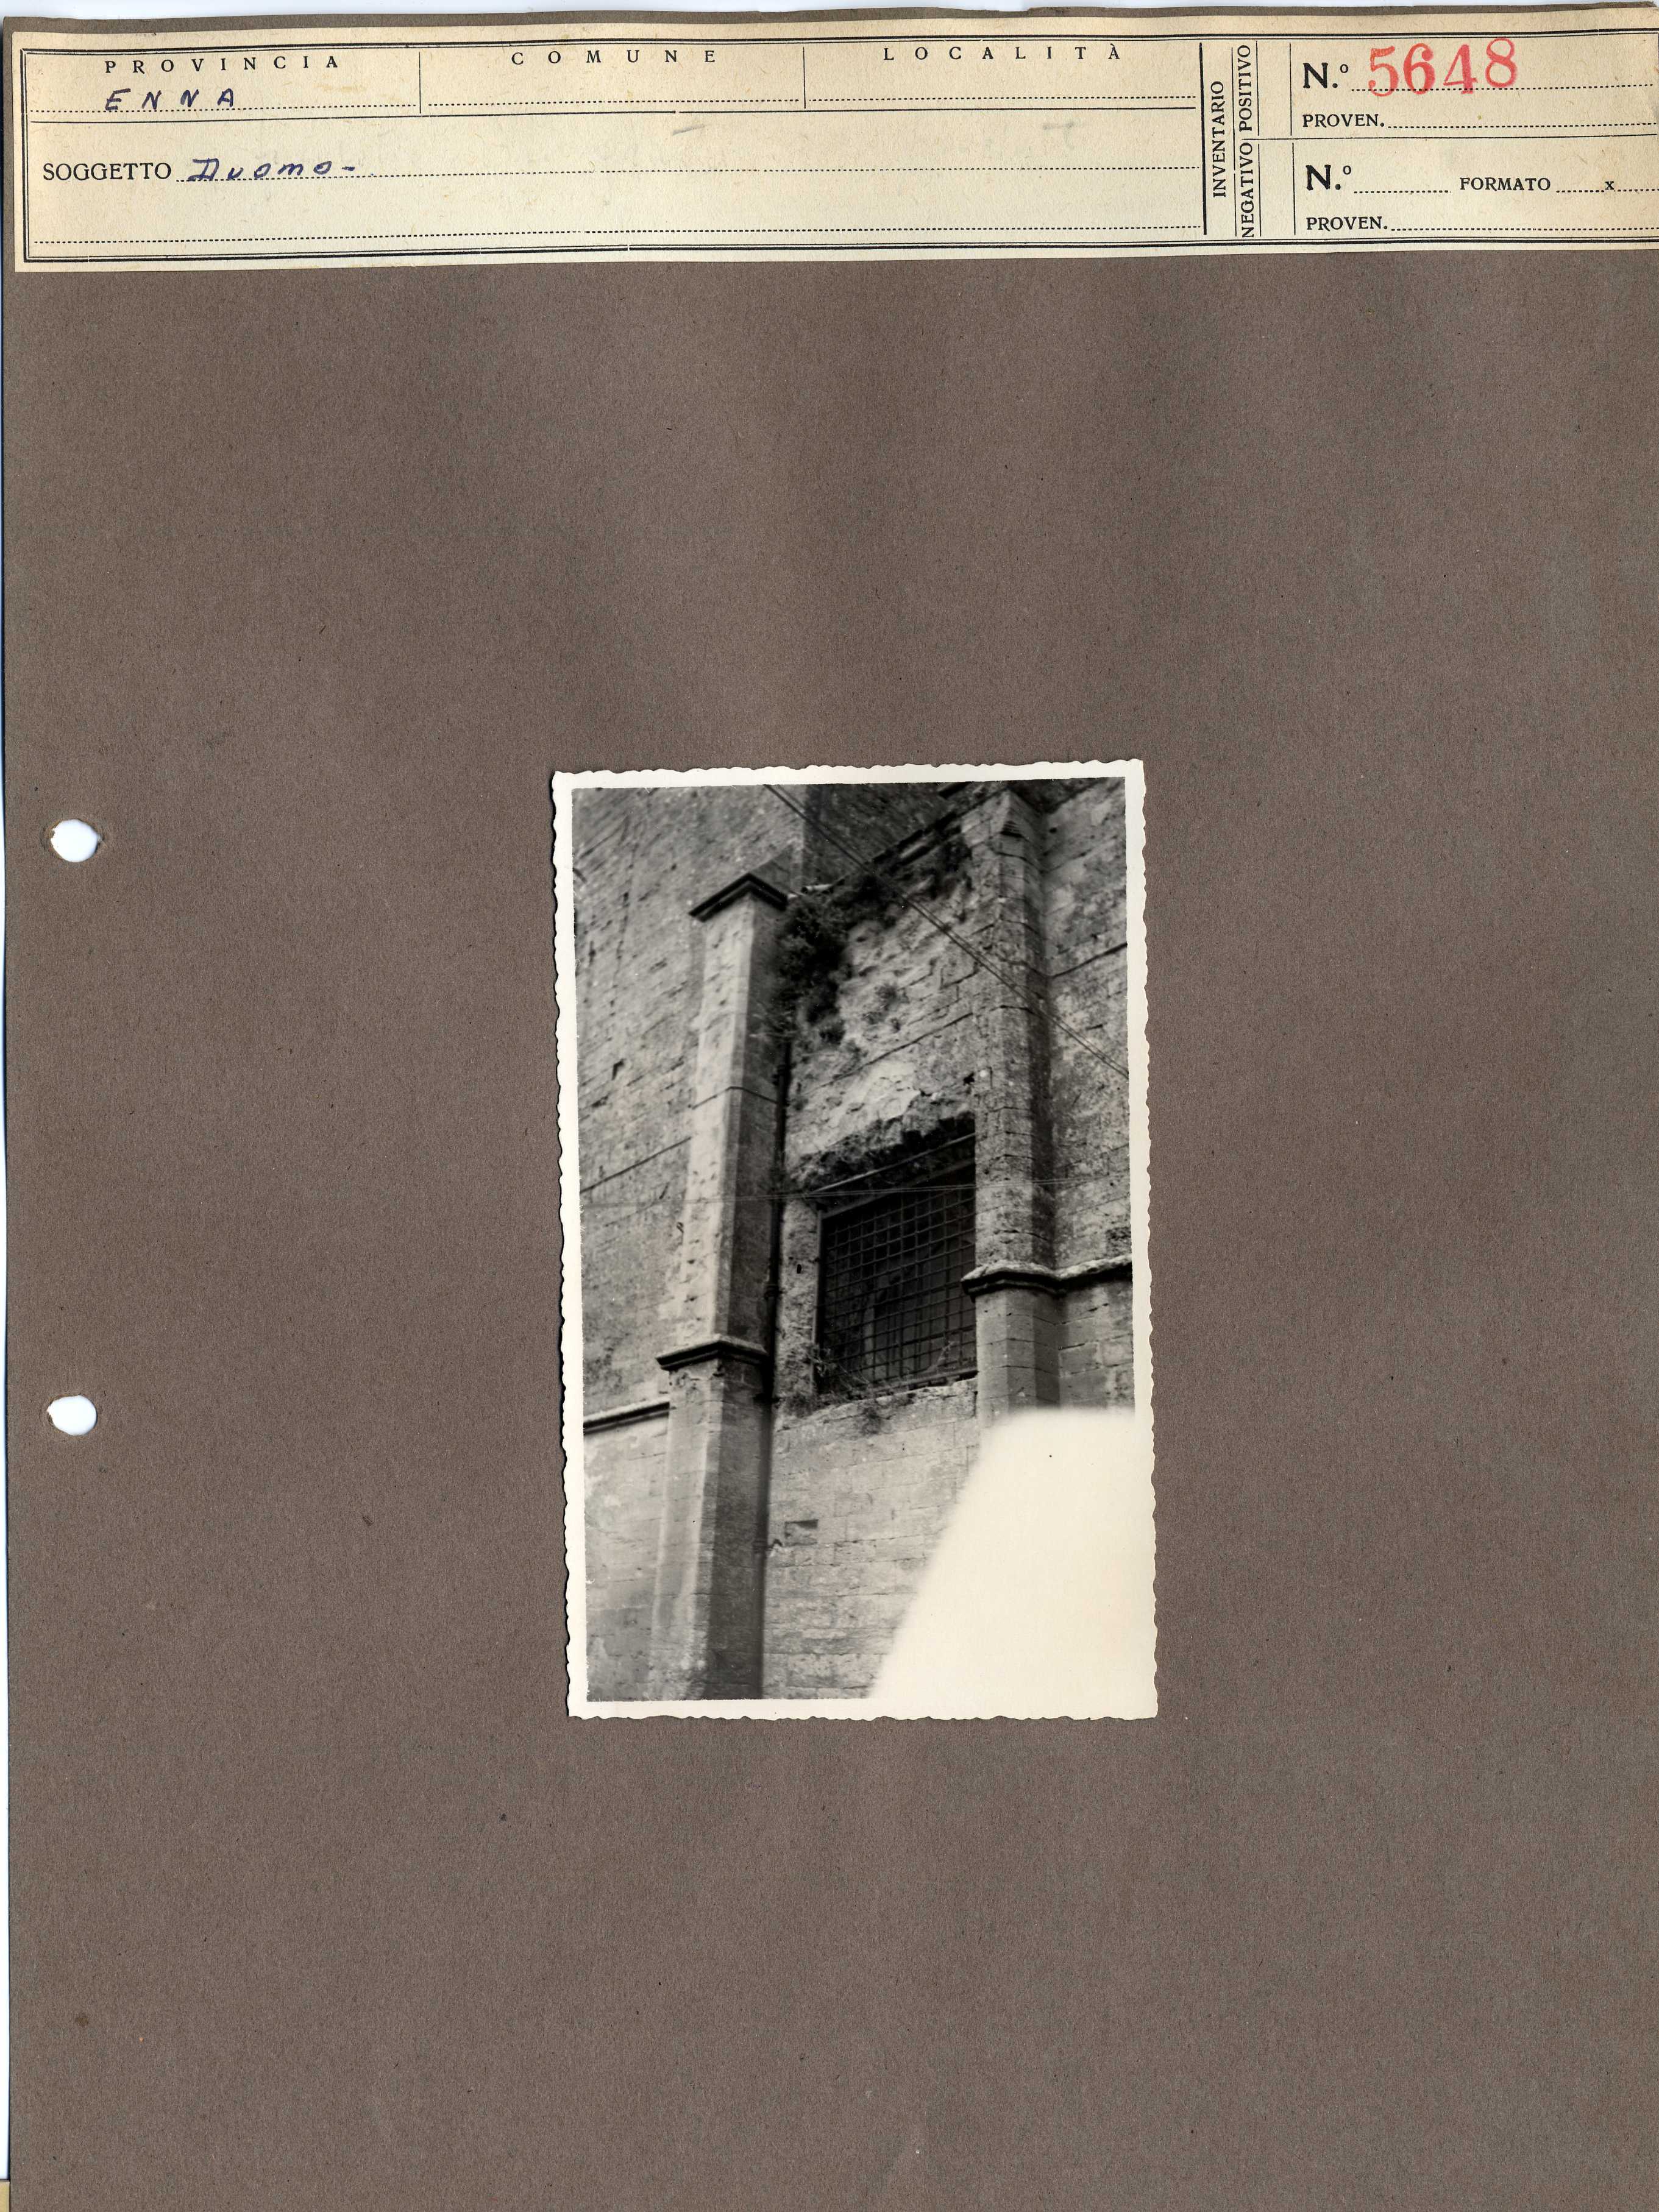 Sicilia - Enna – Architettura religiosa - Duomo (positivo, elemento-parte componente, scheda di supporto) di Anonimo <1945 - 1955> (metà XX)